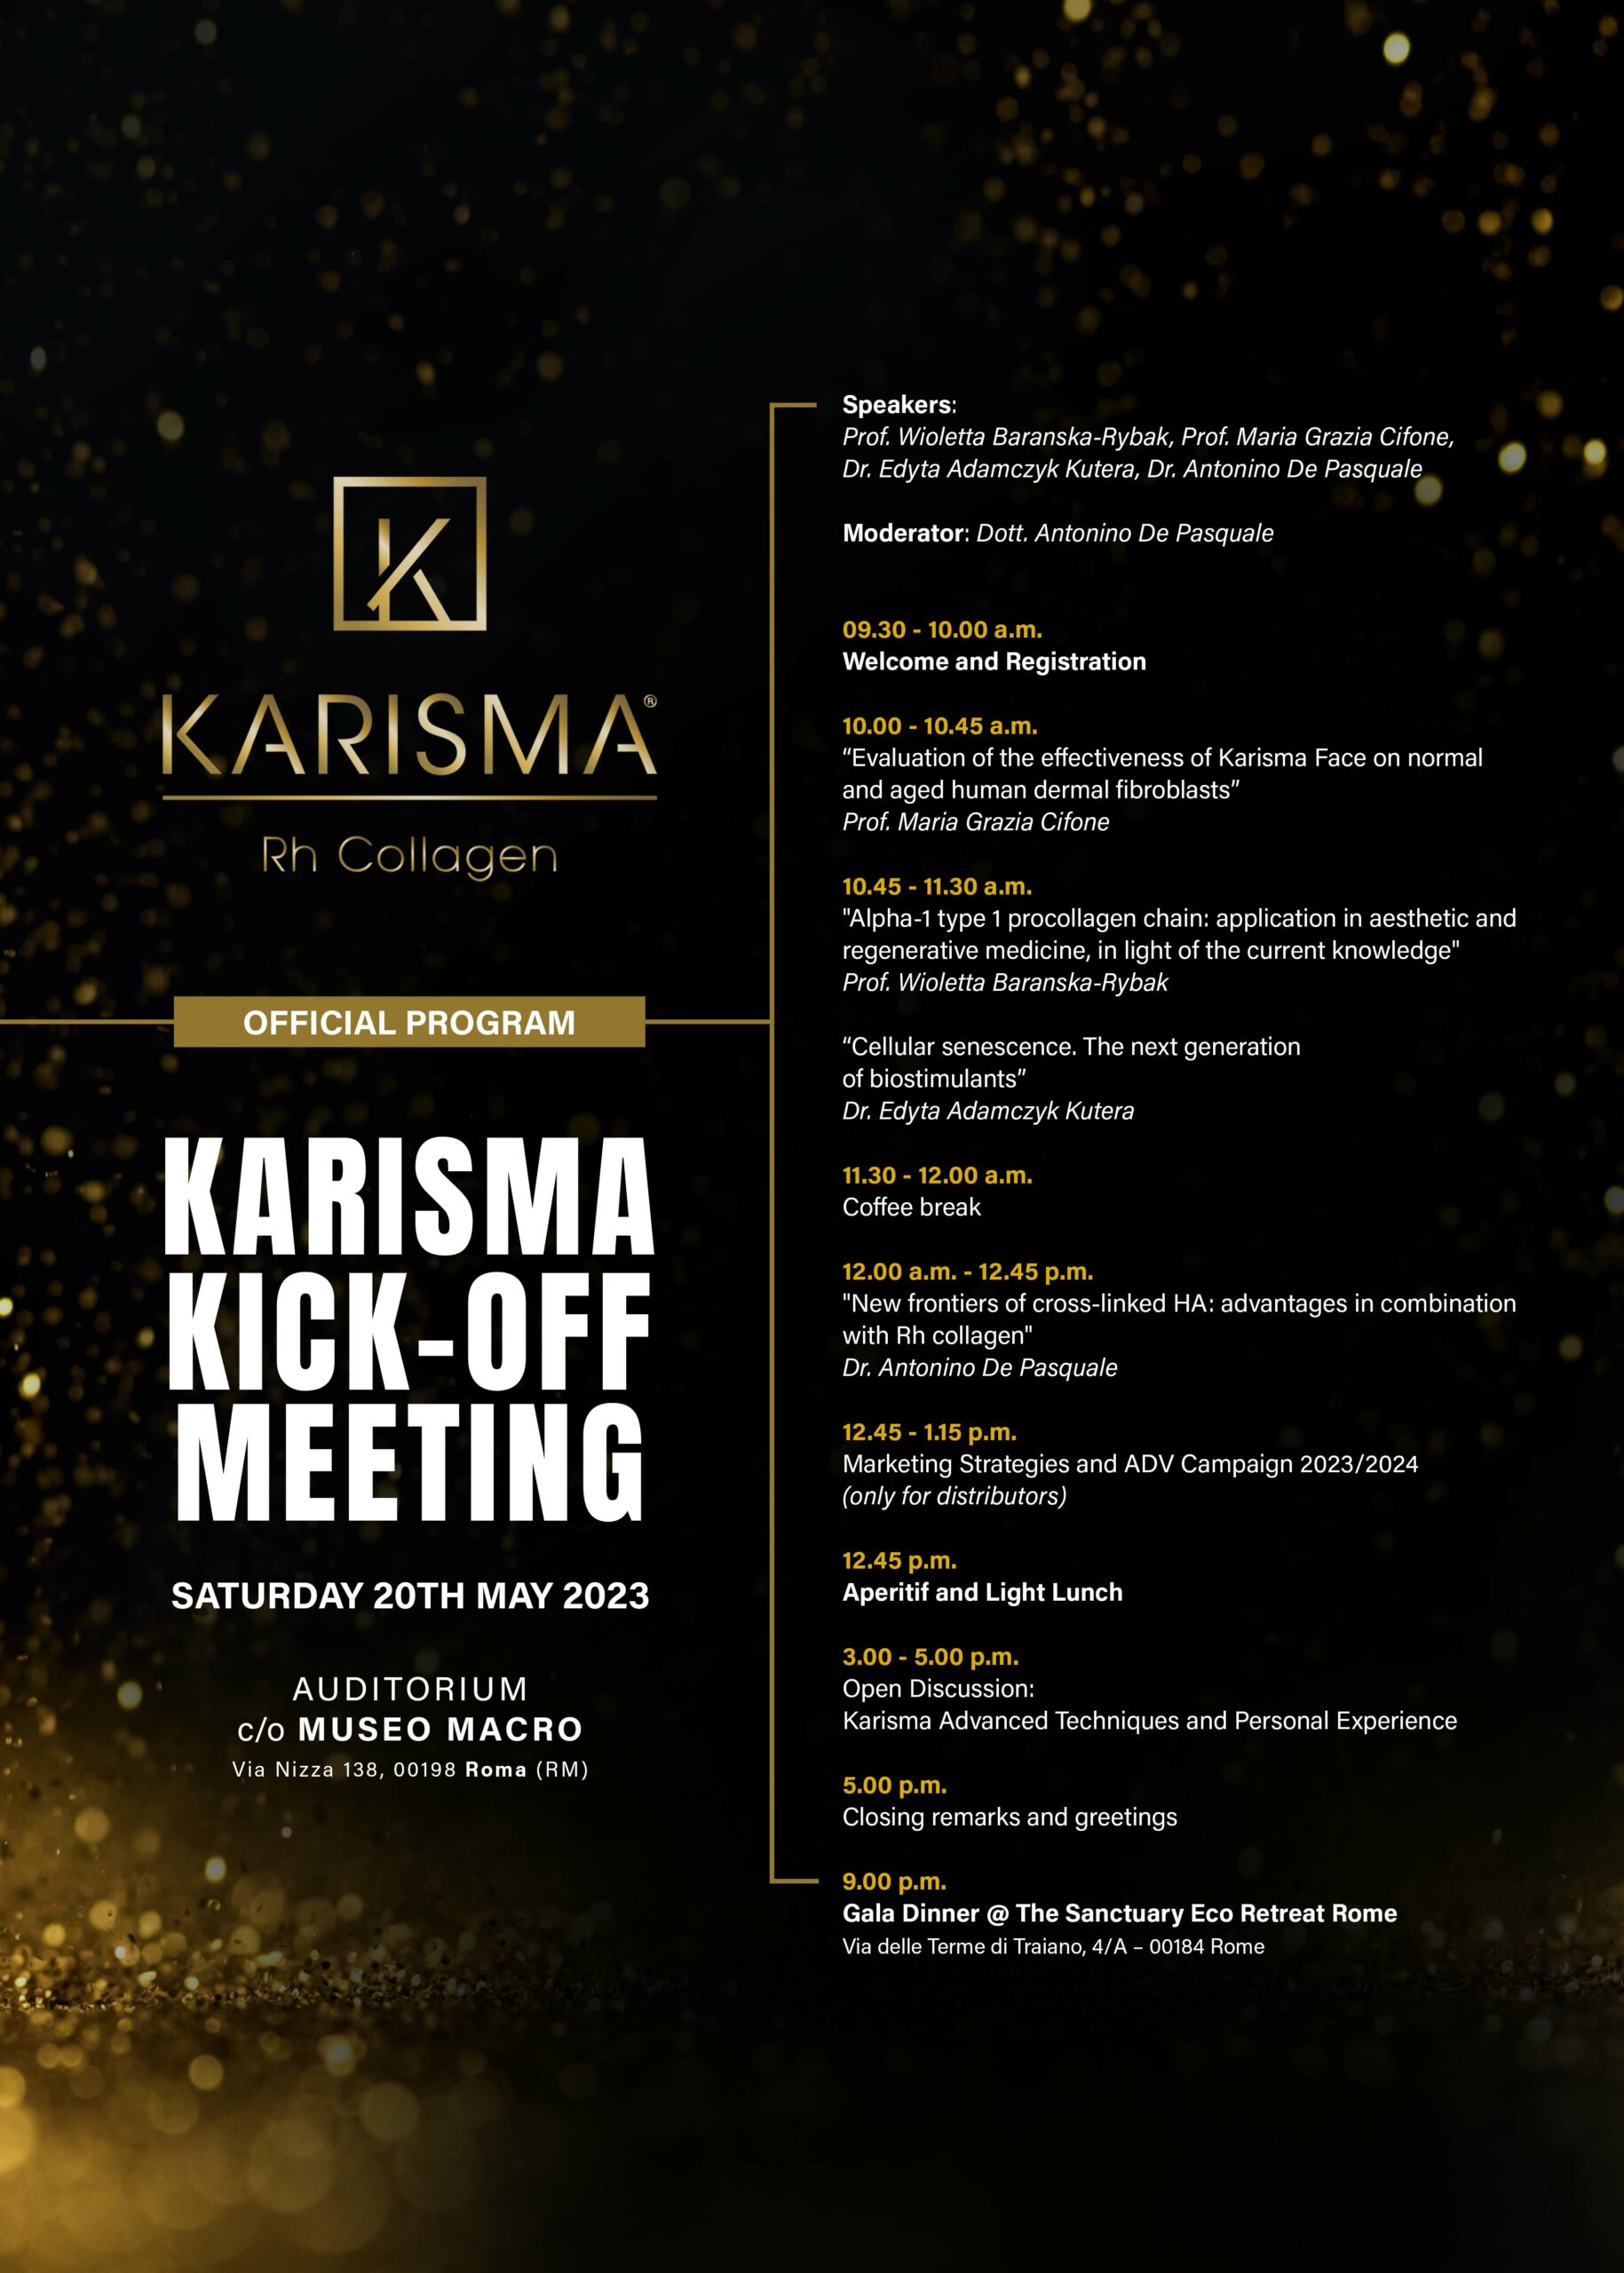 KARISMA KICK-OFF MEETING